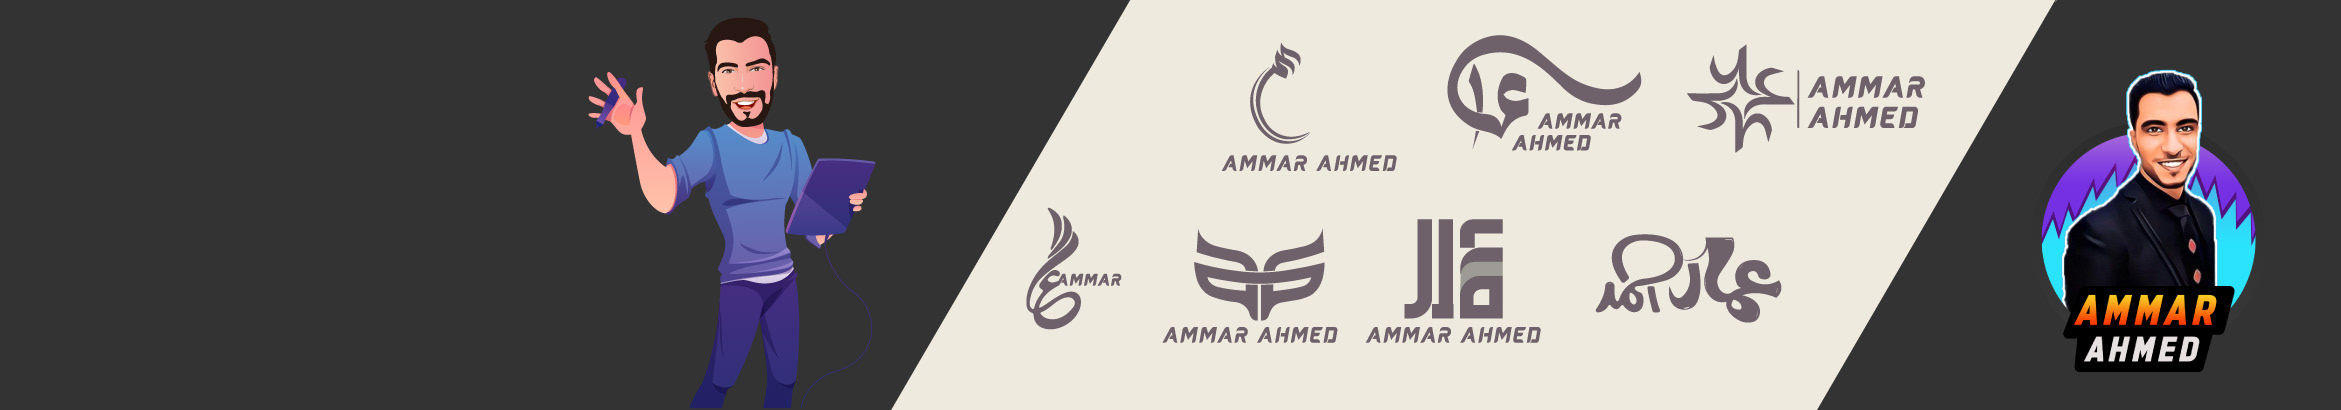 Banner de perfil de Ammar Ahmed